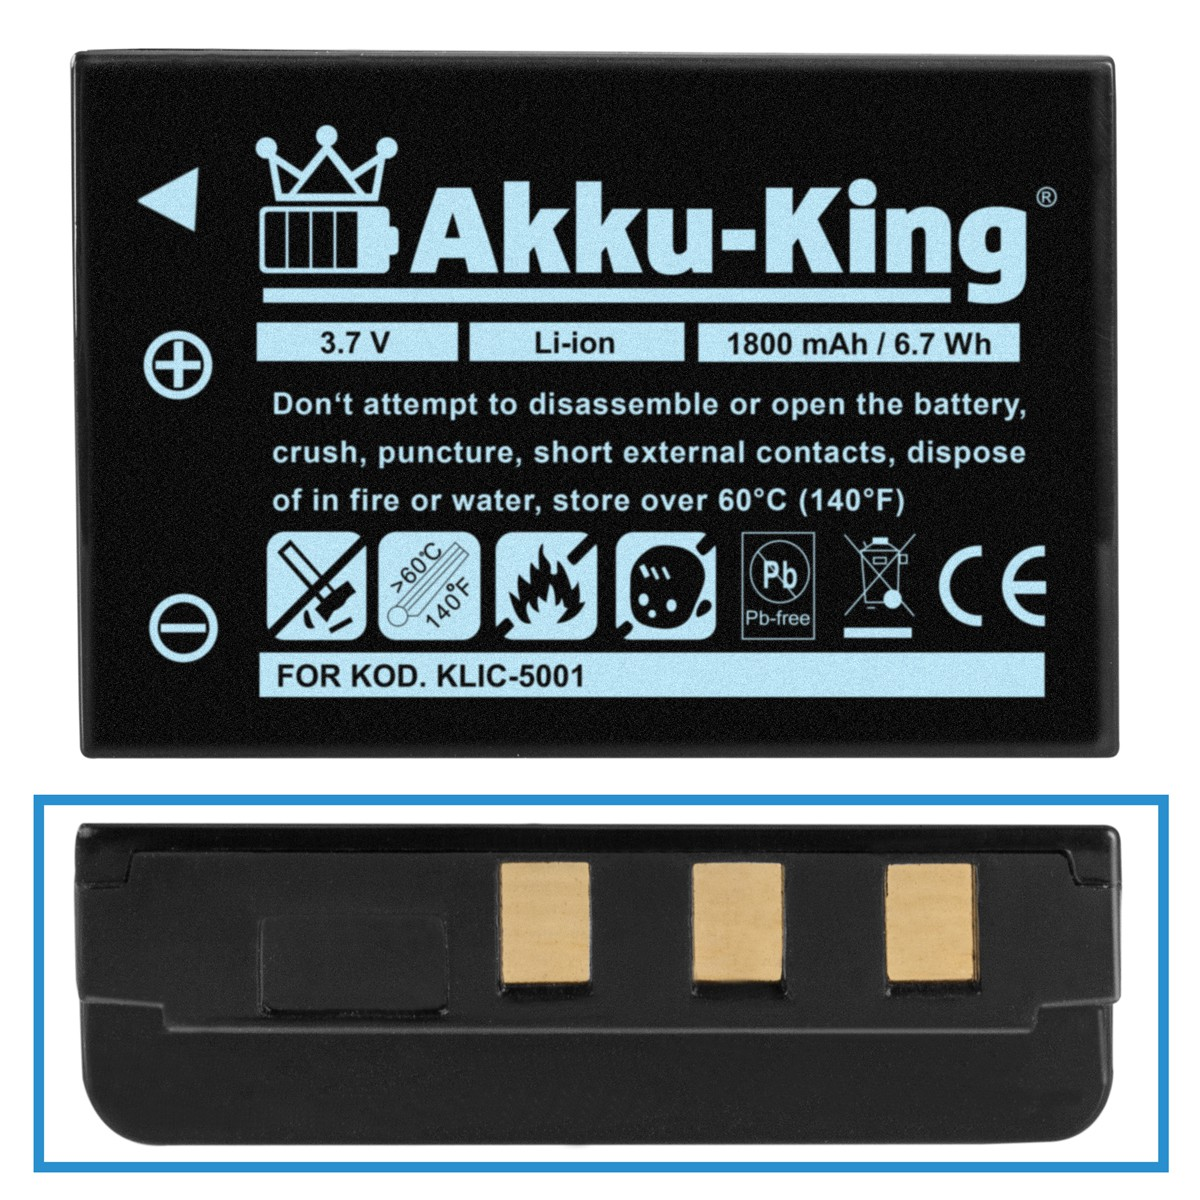 AKKU-KING Akku mit KLIC-5001 Kodak Li-Ion Kamera-Akku, 3.7 Volt, 1800mAh kompatibel